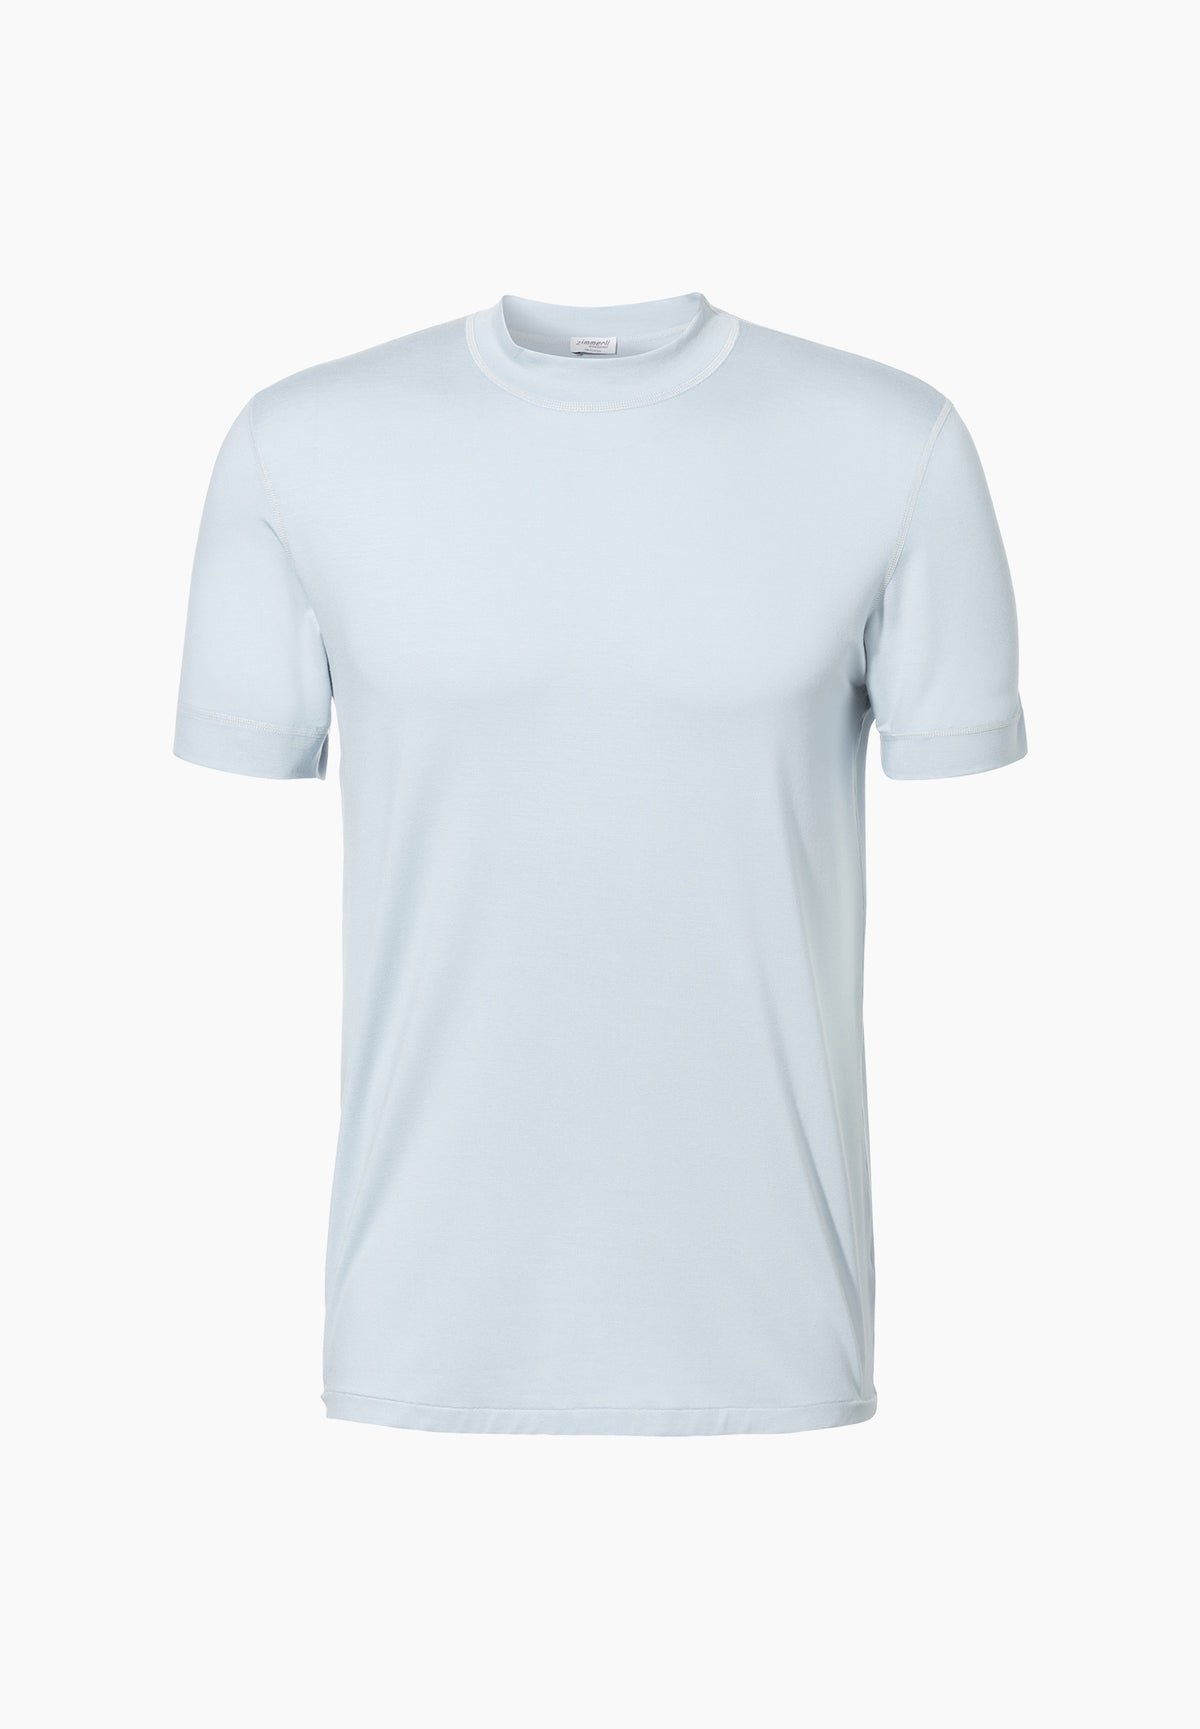 Pureness | T-Shirt à manches courtes - sky blue